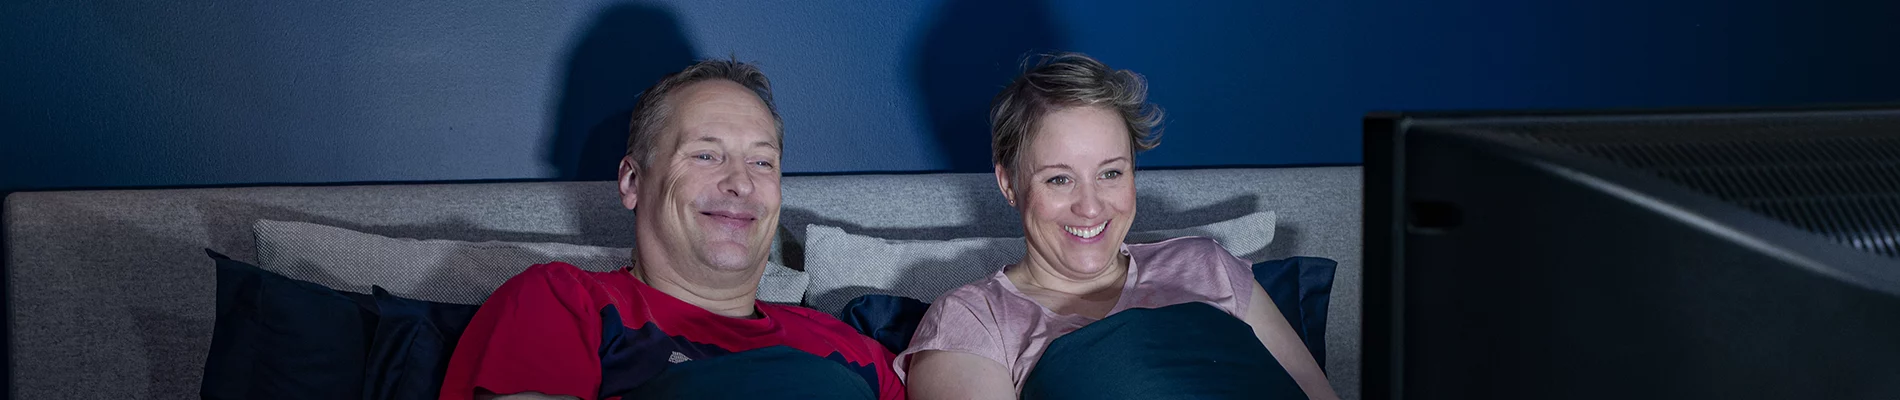 Mies ja nainen katsovat televisiota sängystä.